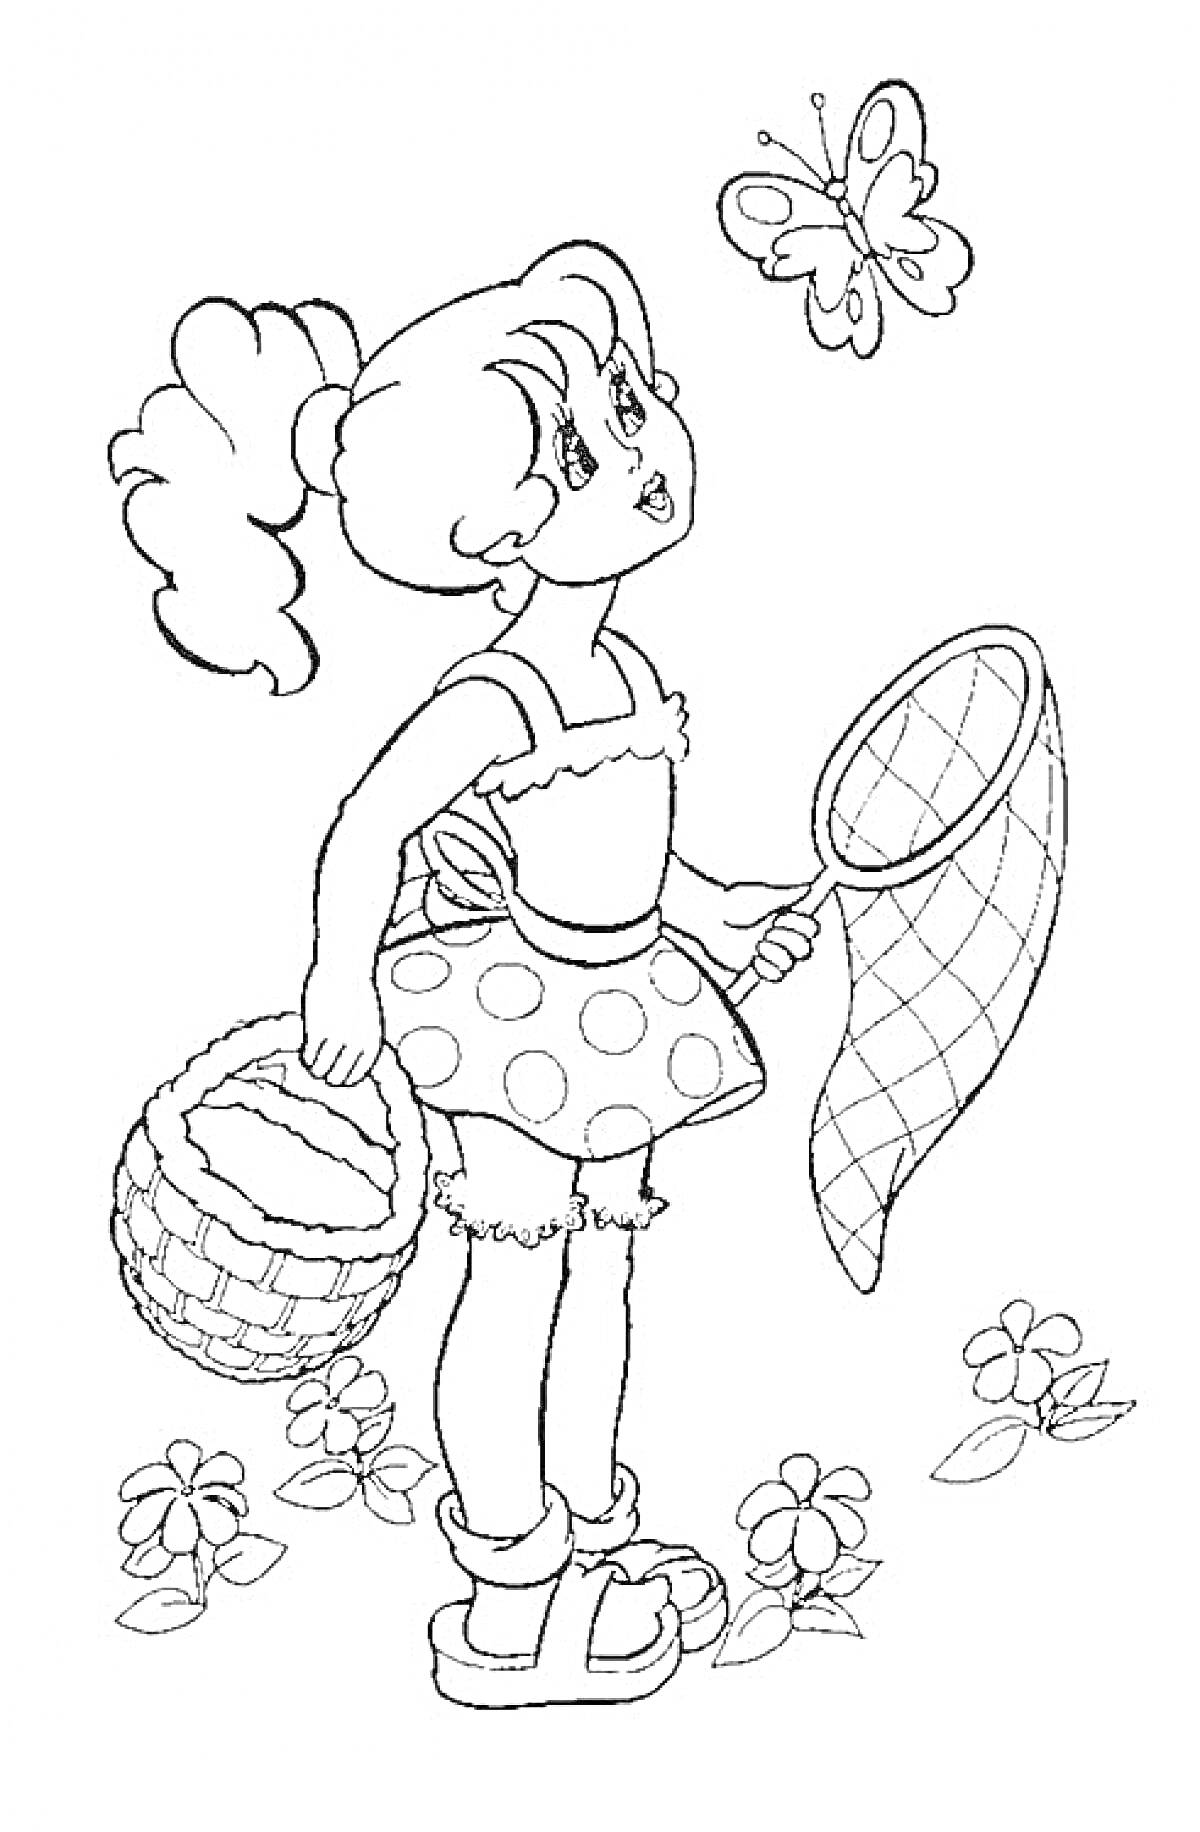 Девочка с корзинкой и сачком смотрит на бабочку на лугу с цветами